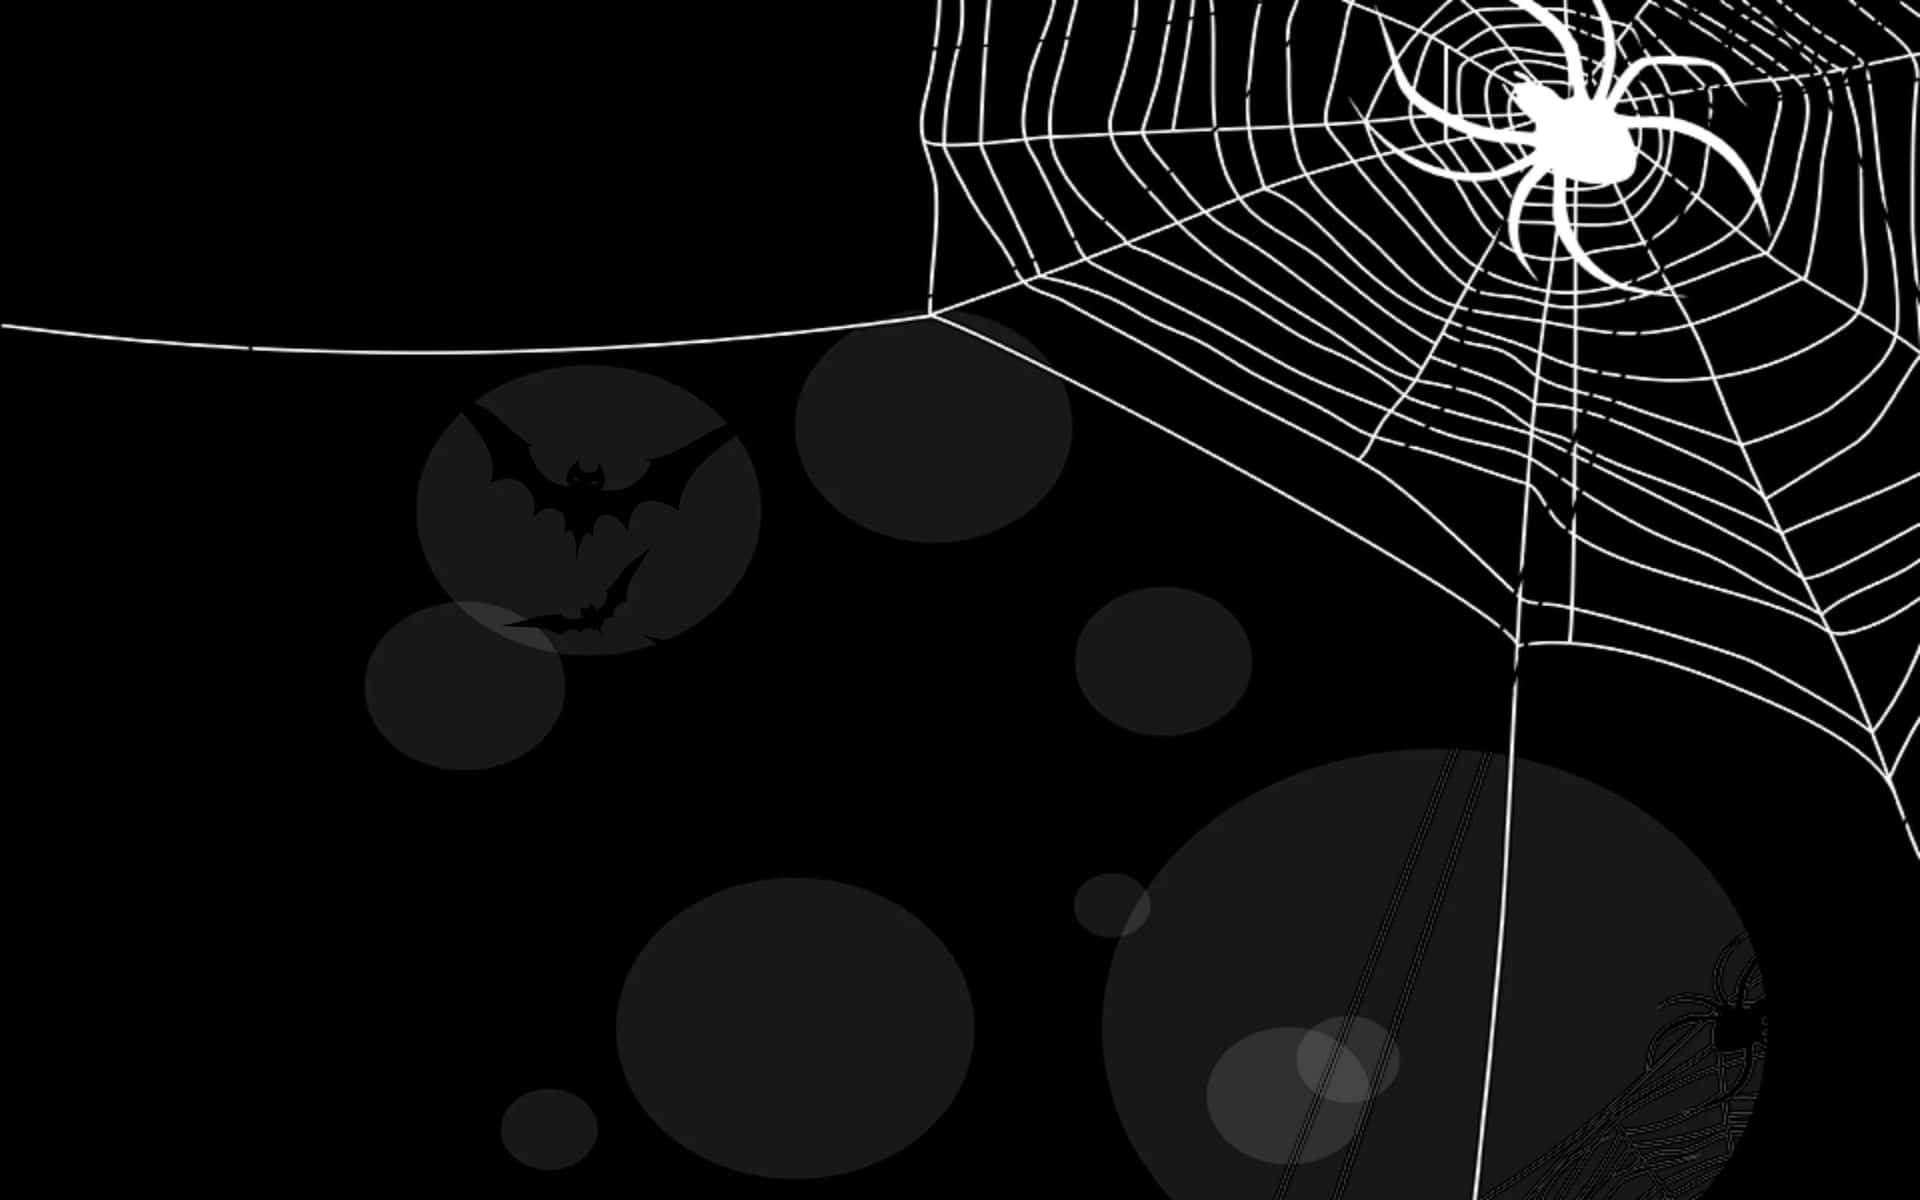 Ennärbild På En Hårig Spindel, Sedd Från Undersidan